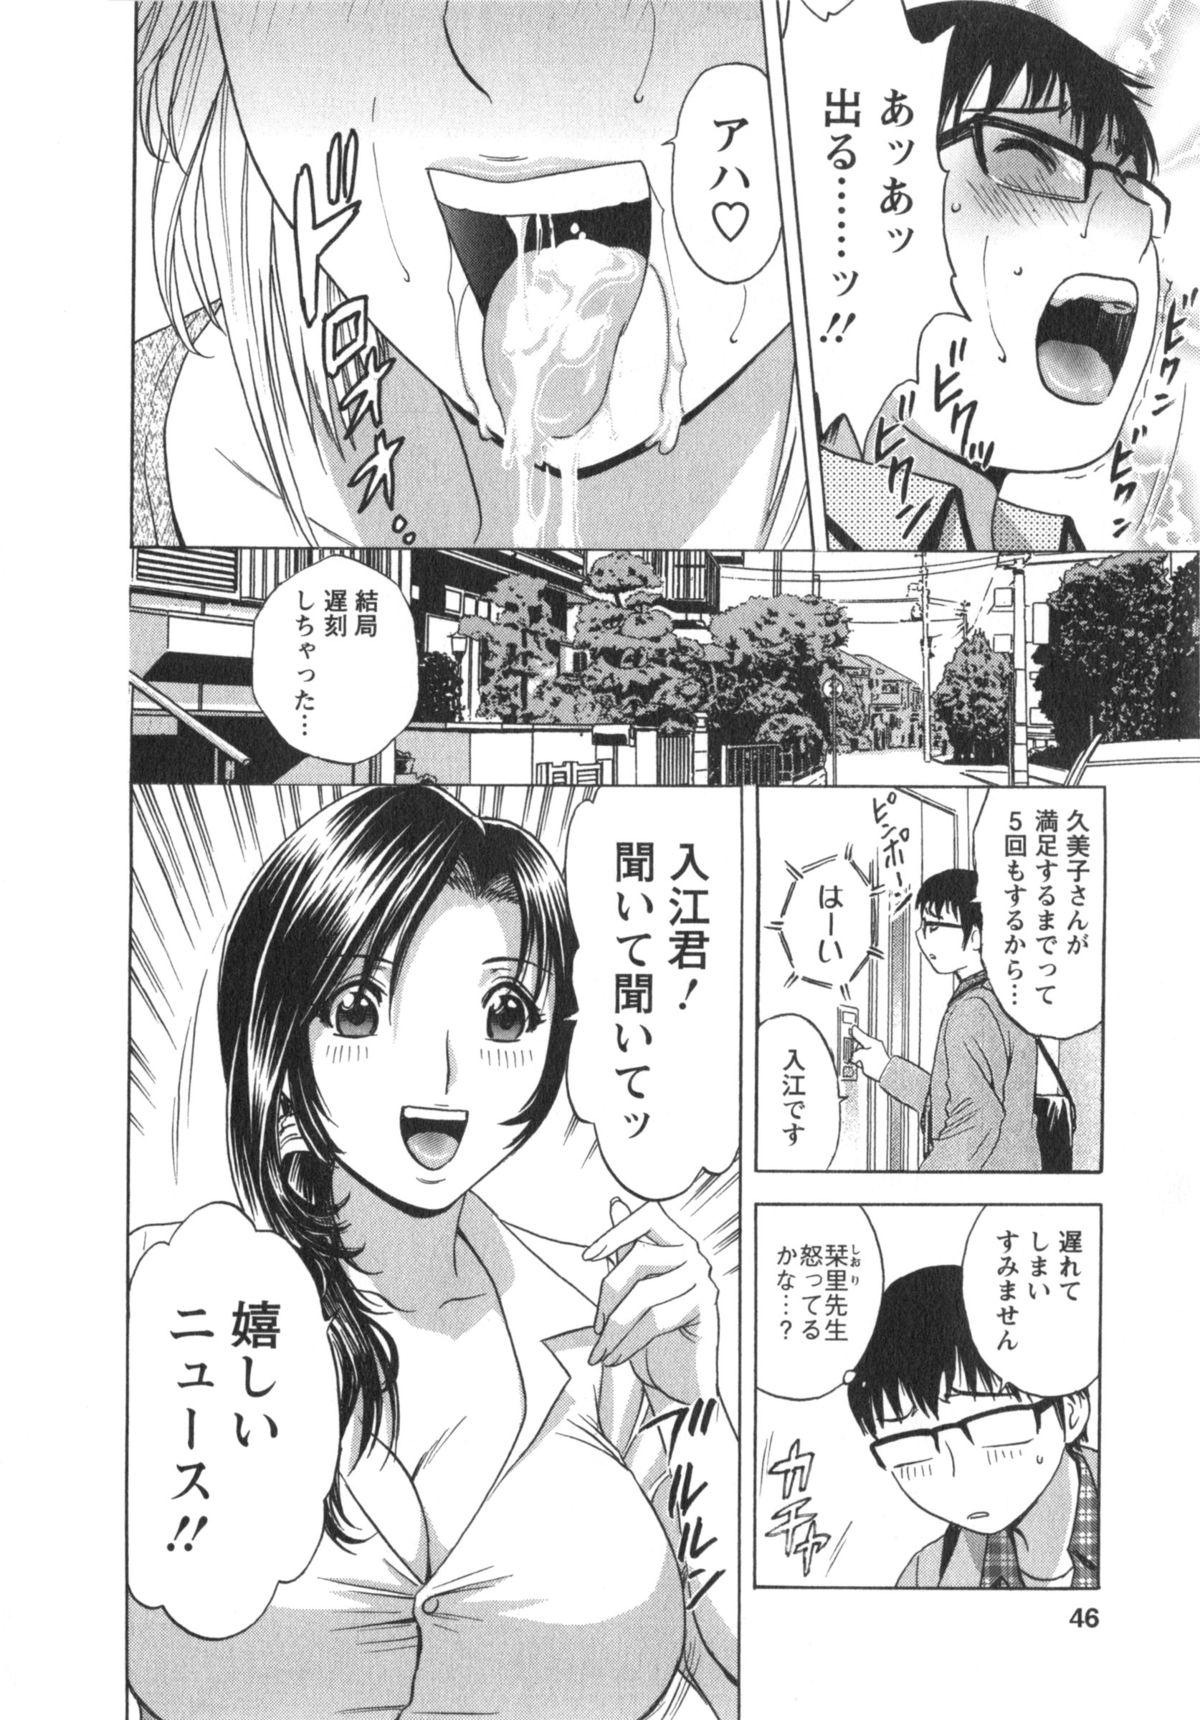 Manga no youna Hitozuma to no Hibi - Days with Married Women such as Comics. 46